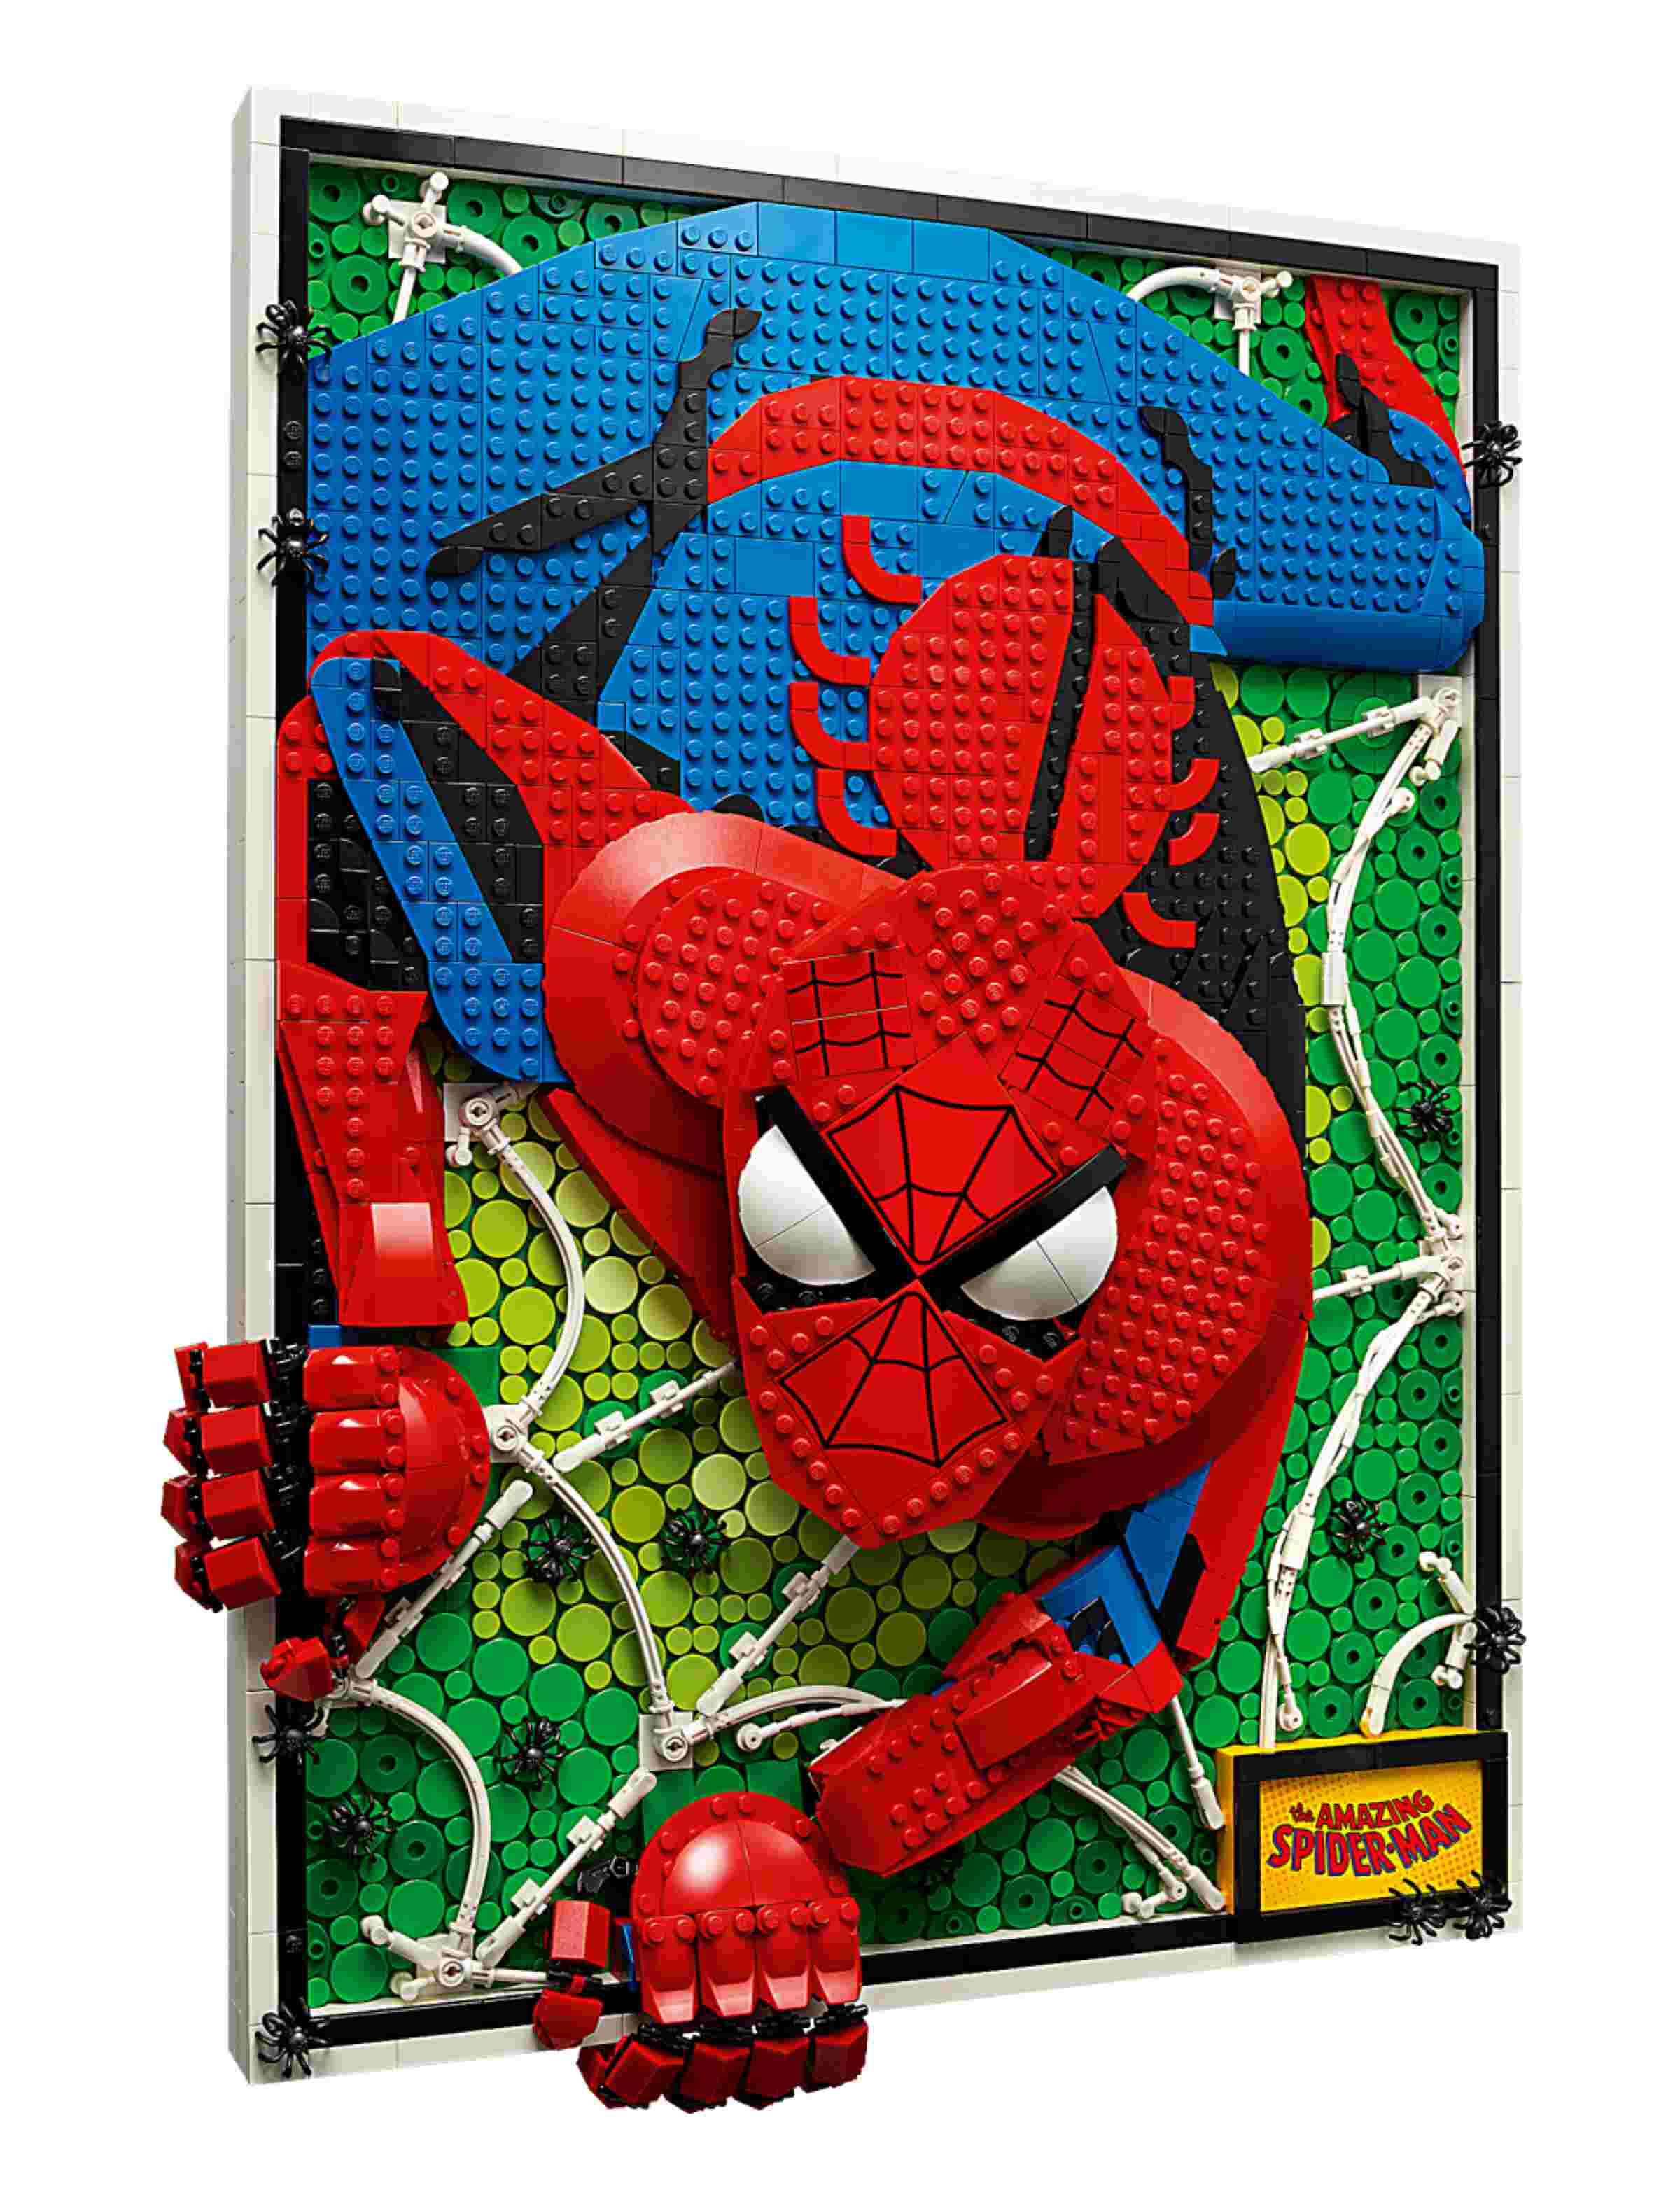 LEGO 31209 ART The Amazing Spider-Man, mehrdimensional und beweglich